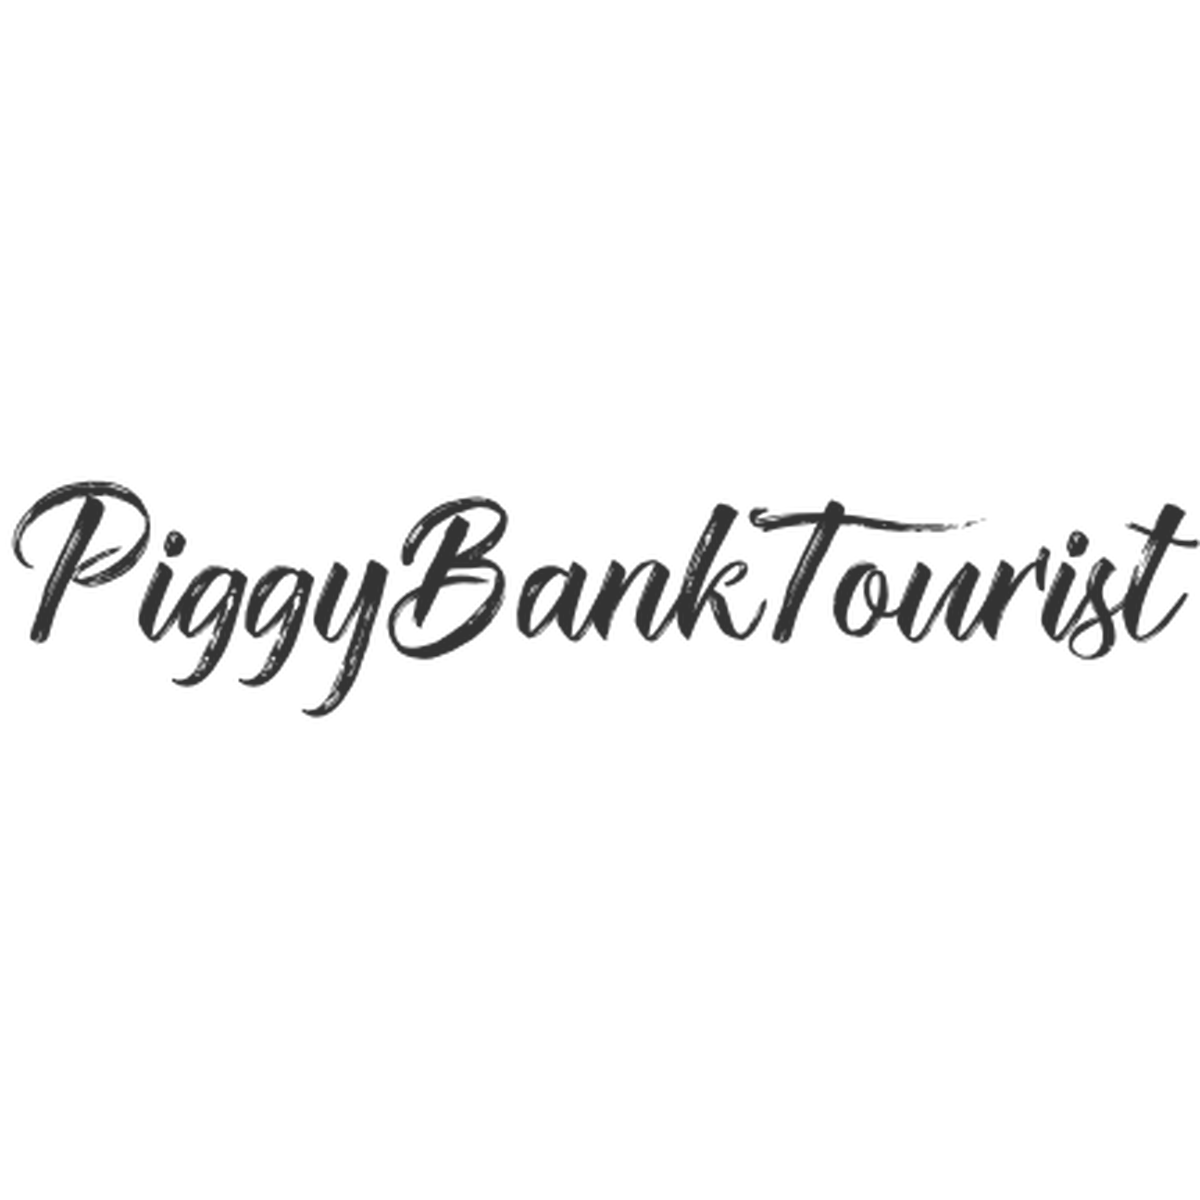 Piggy Bank Tourist